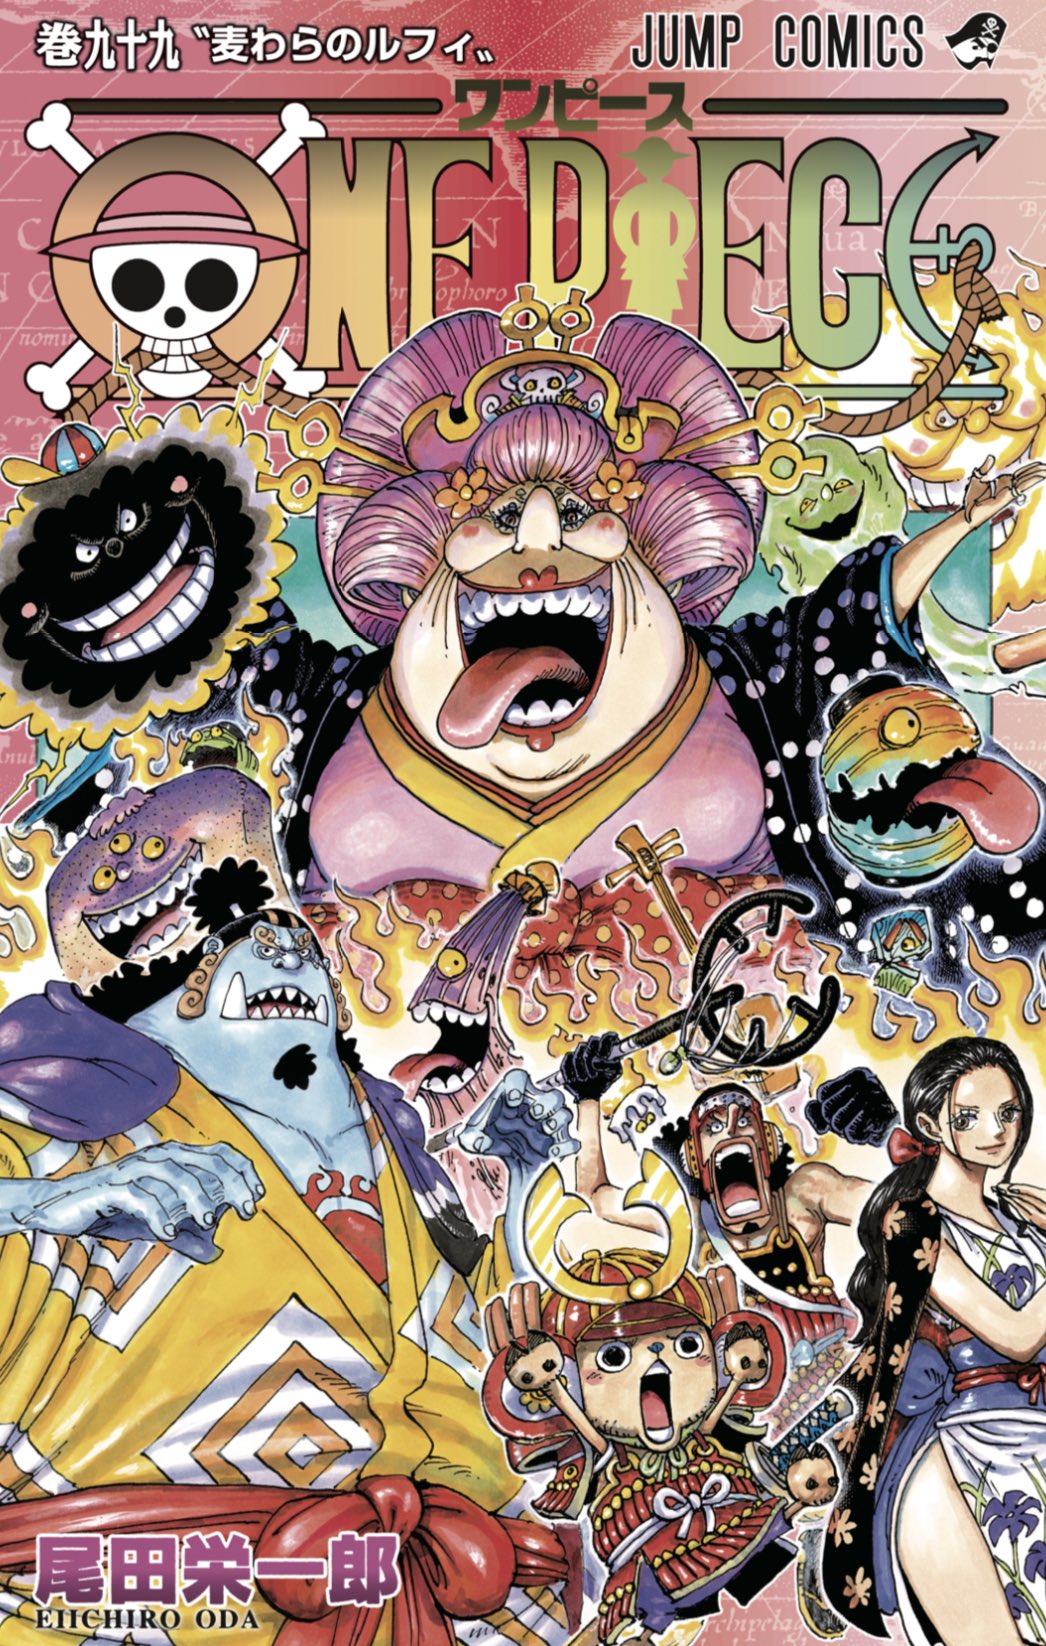 Shonen Jump News Unofficial One Piece Volume 99 Cover T Co H3bi7unhac Twitter